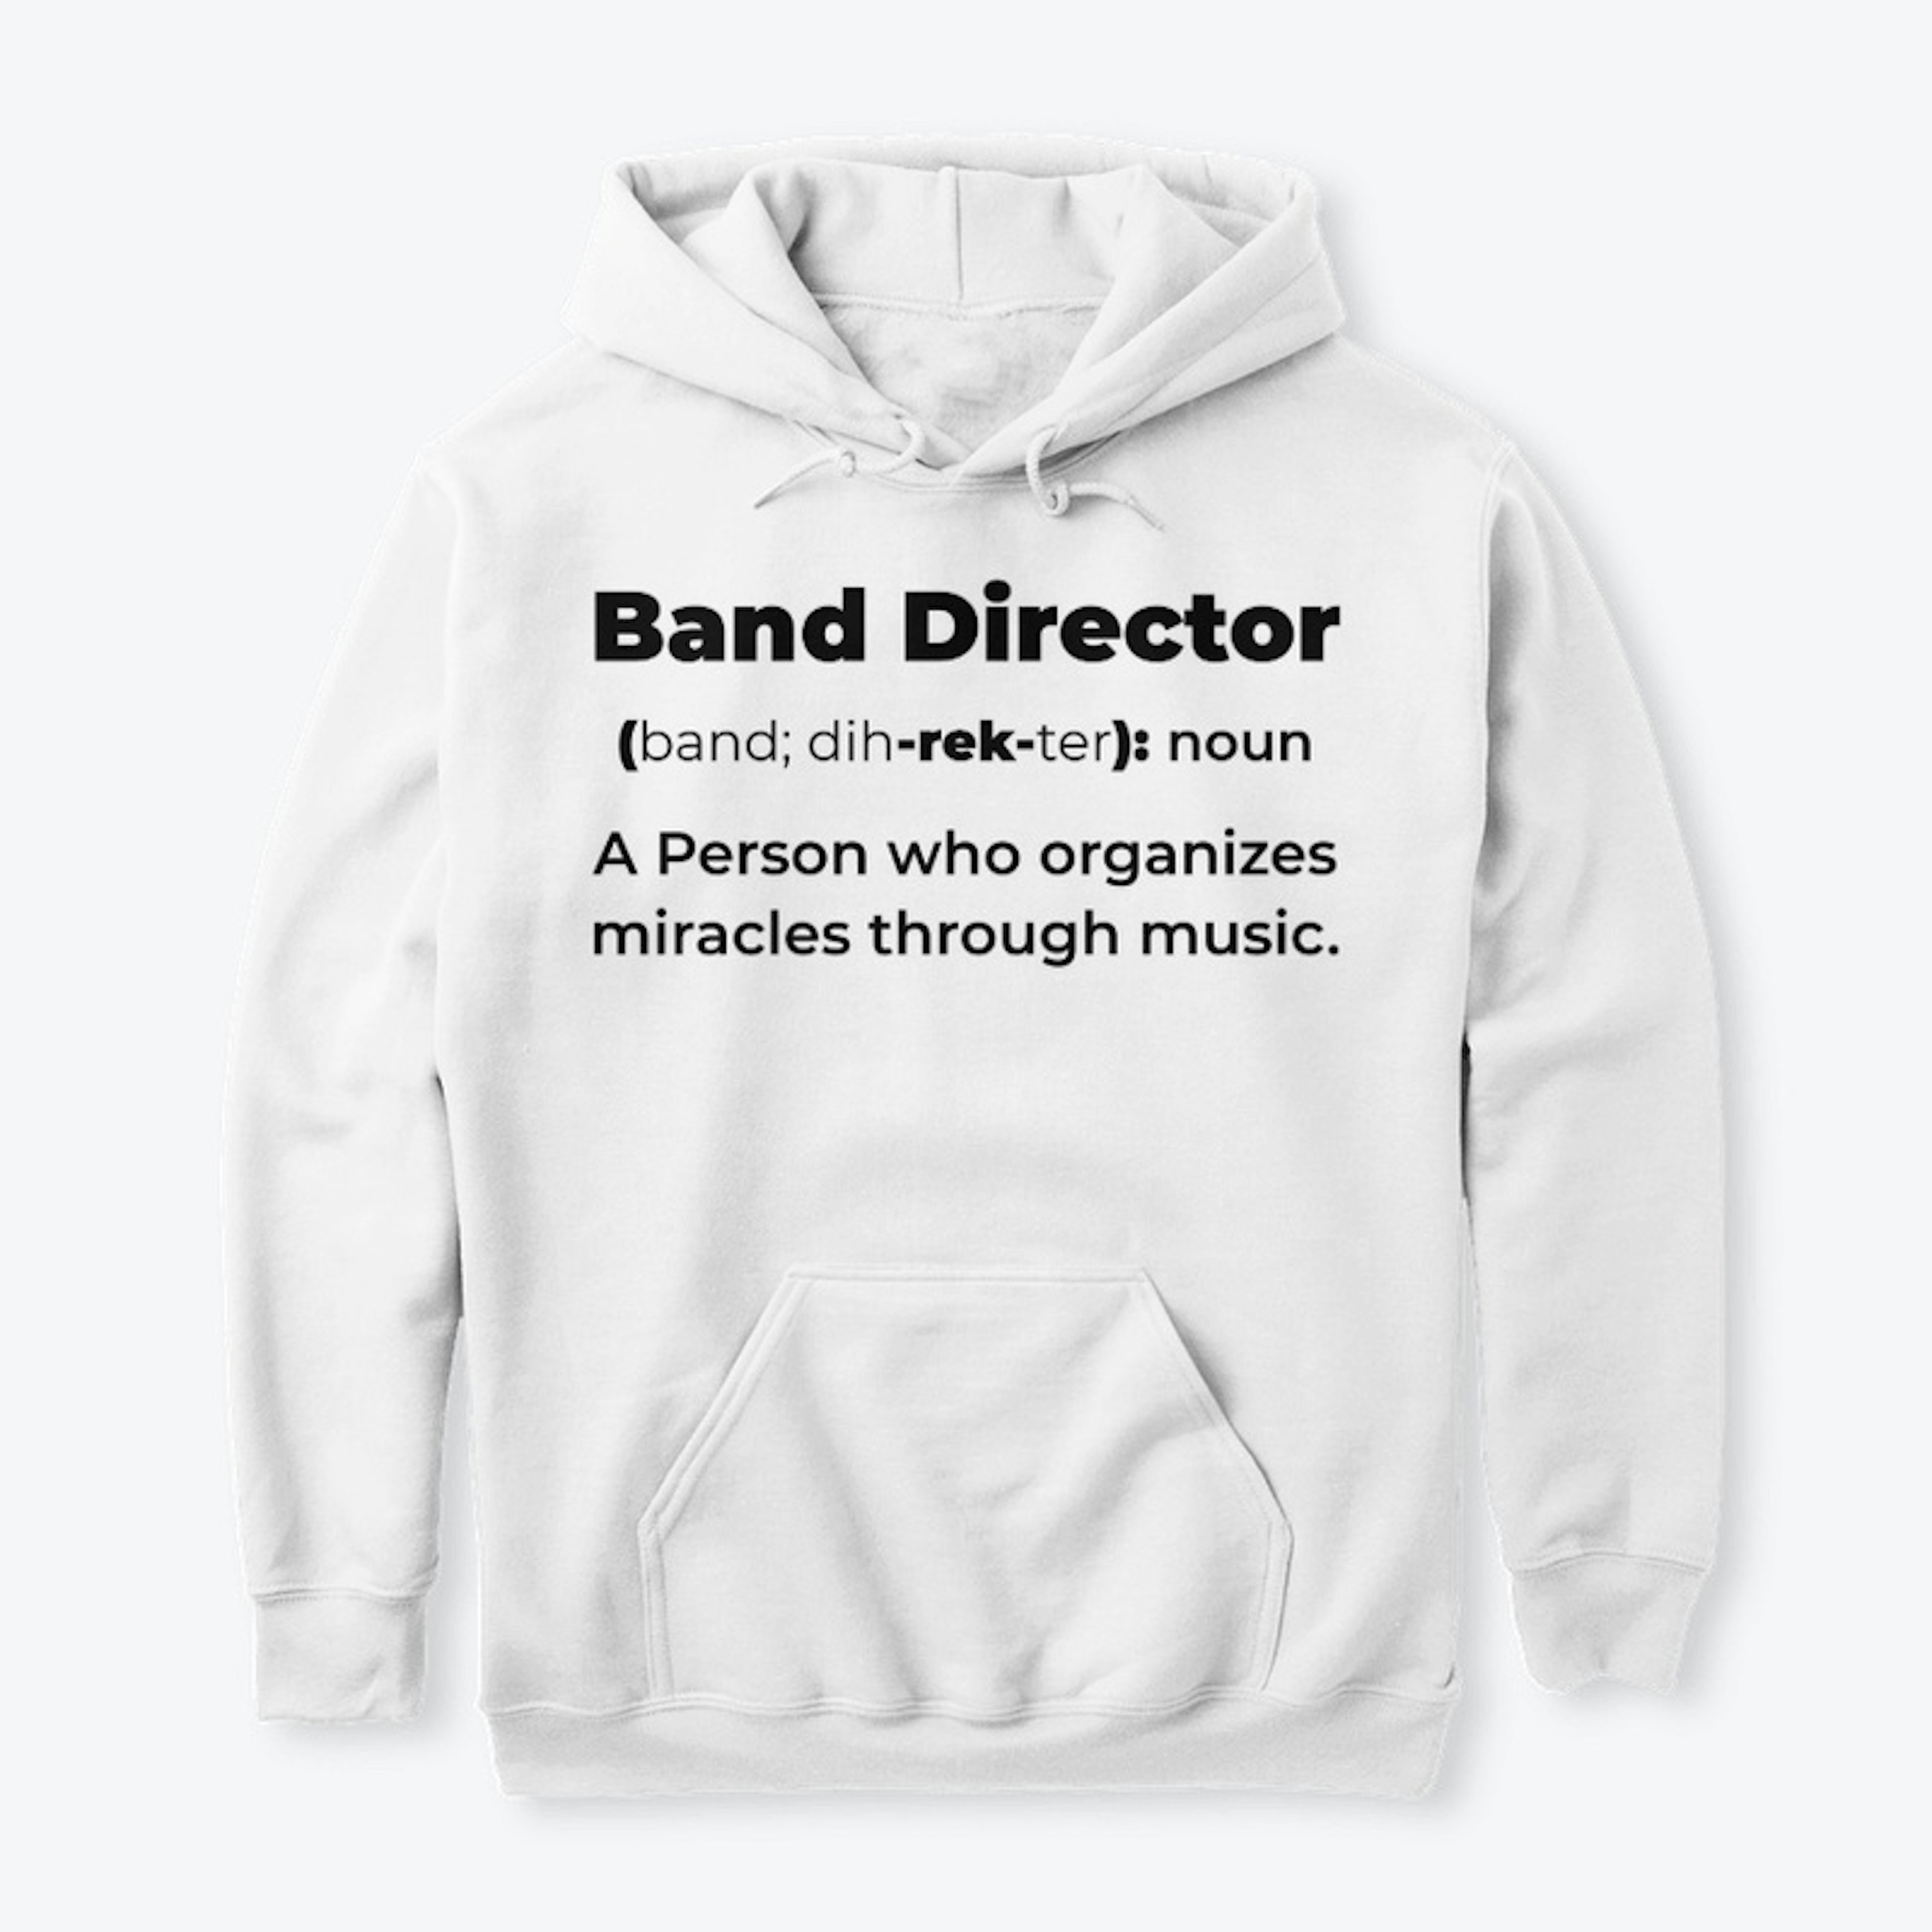 Band Director Miracle Shirt